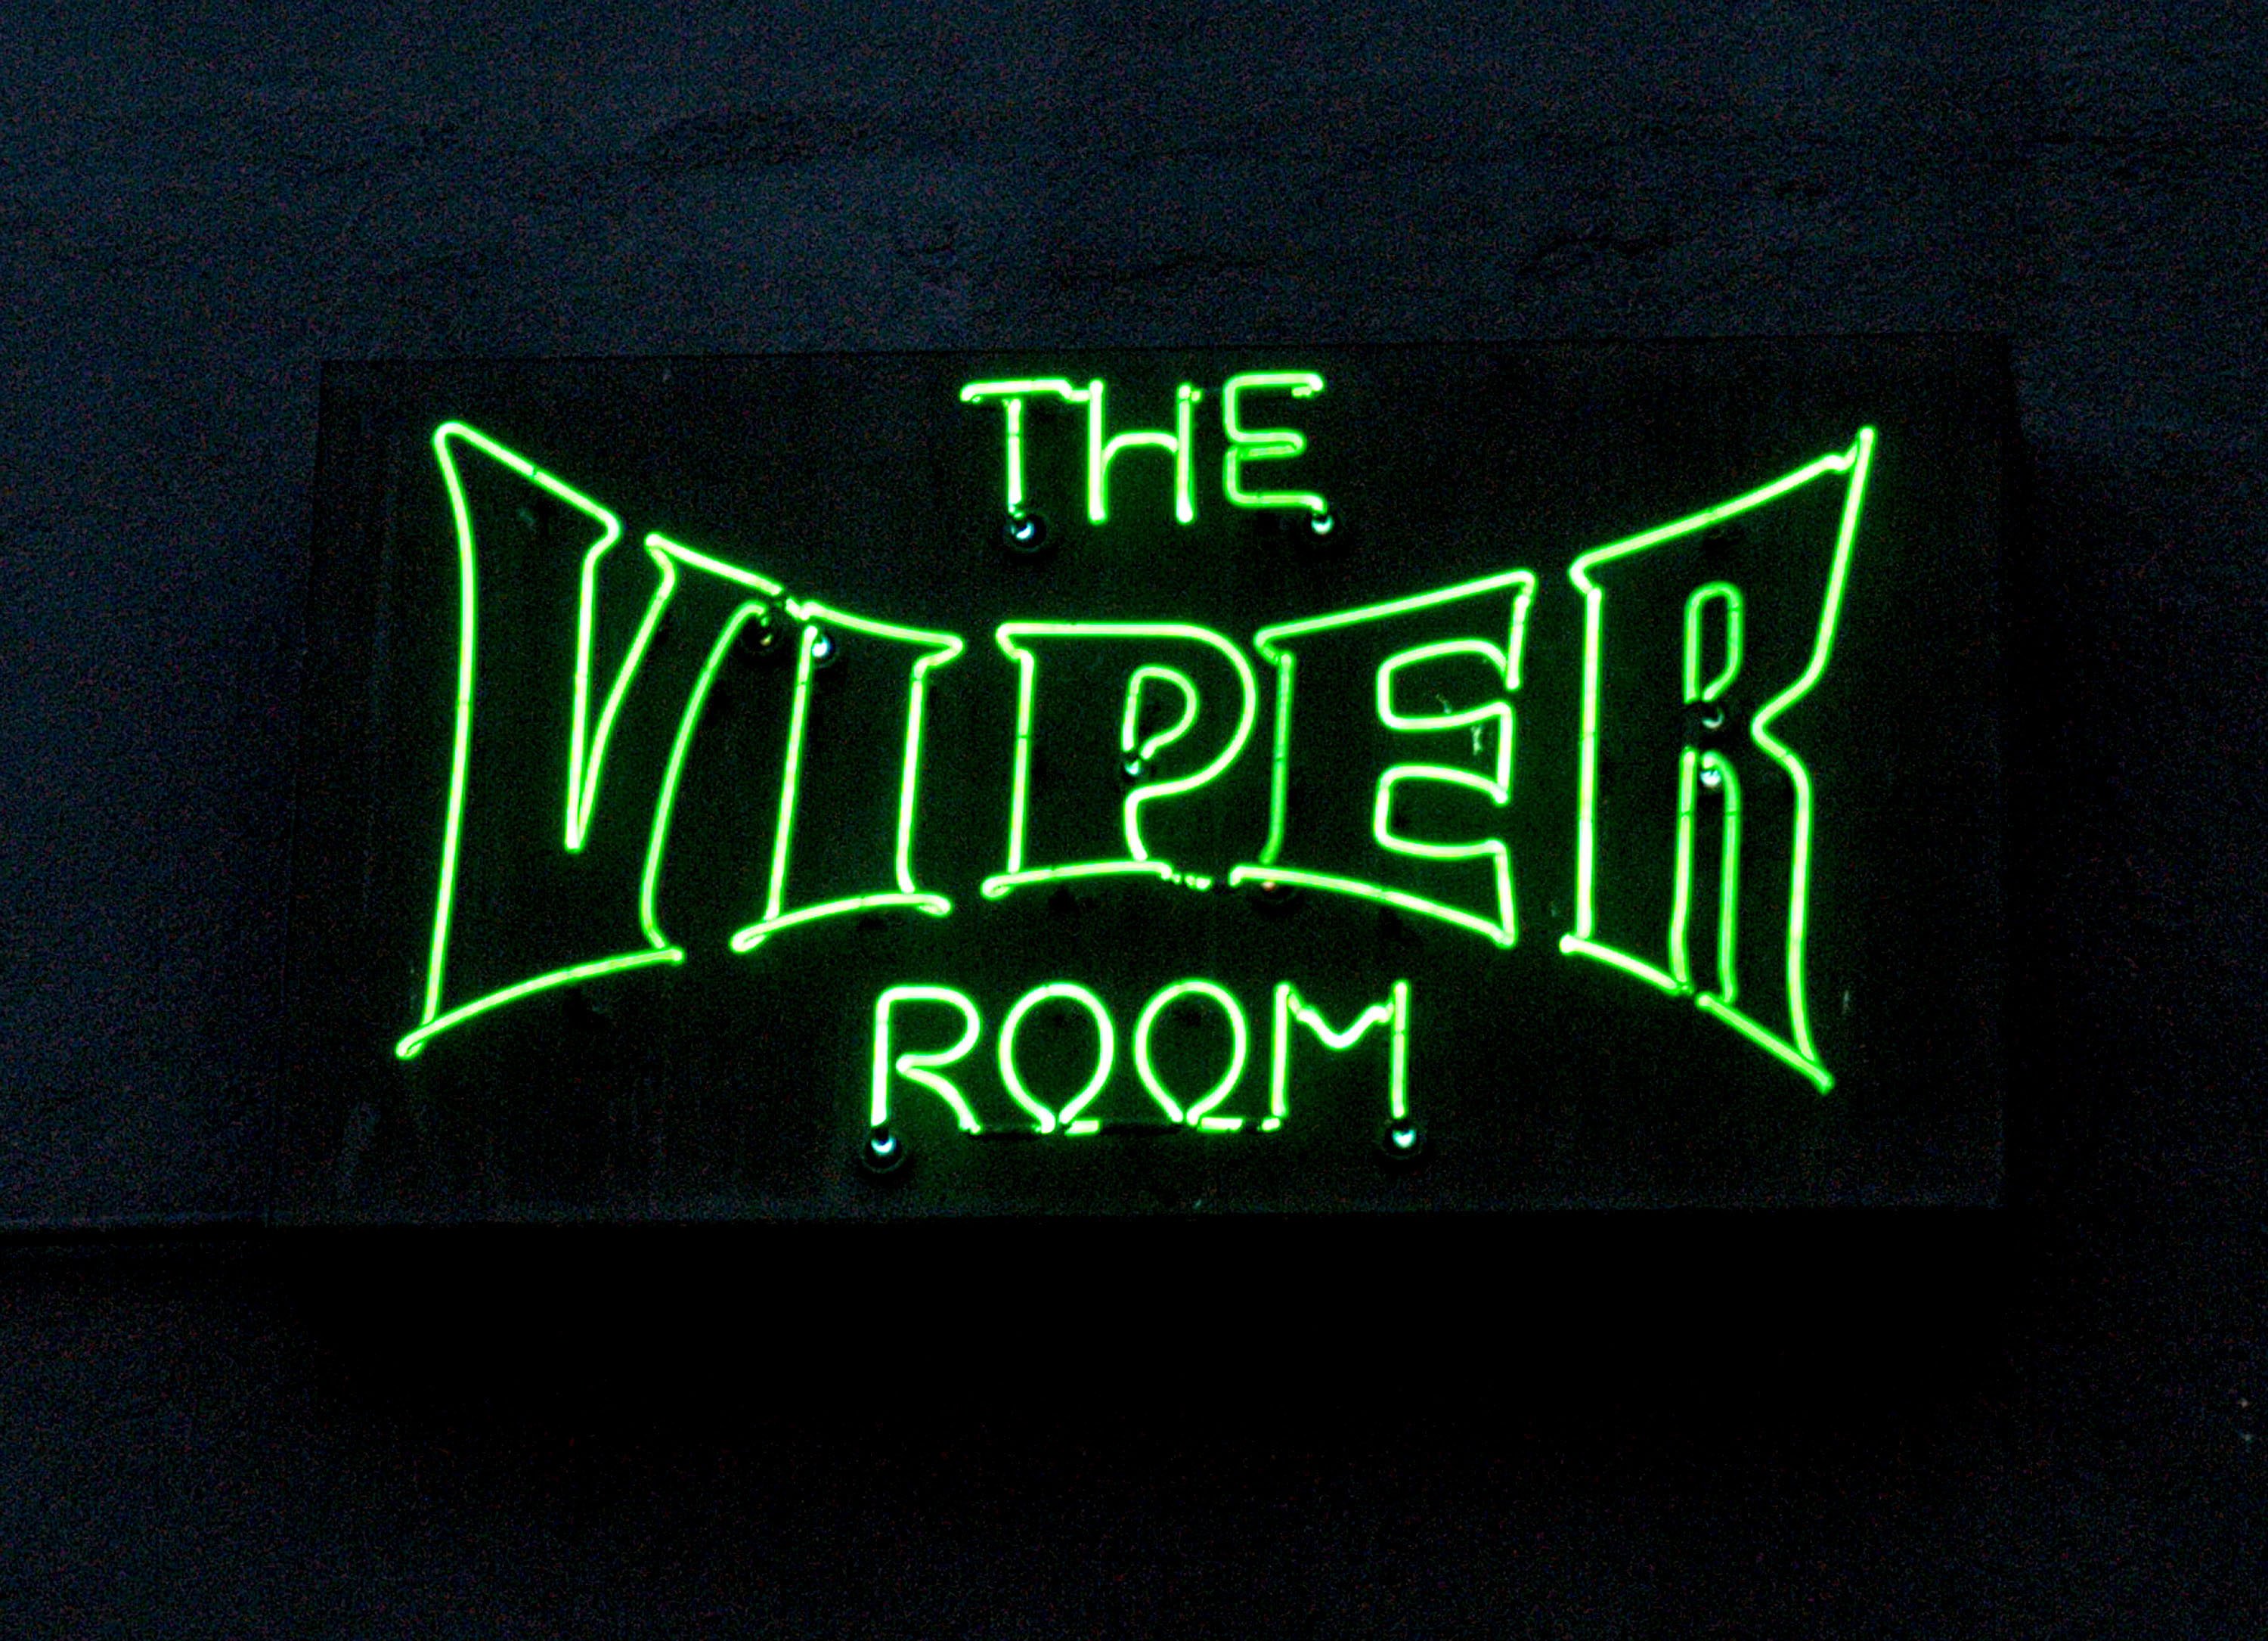 Viper Room neon sign